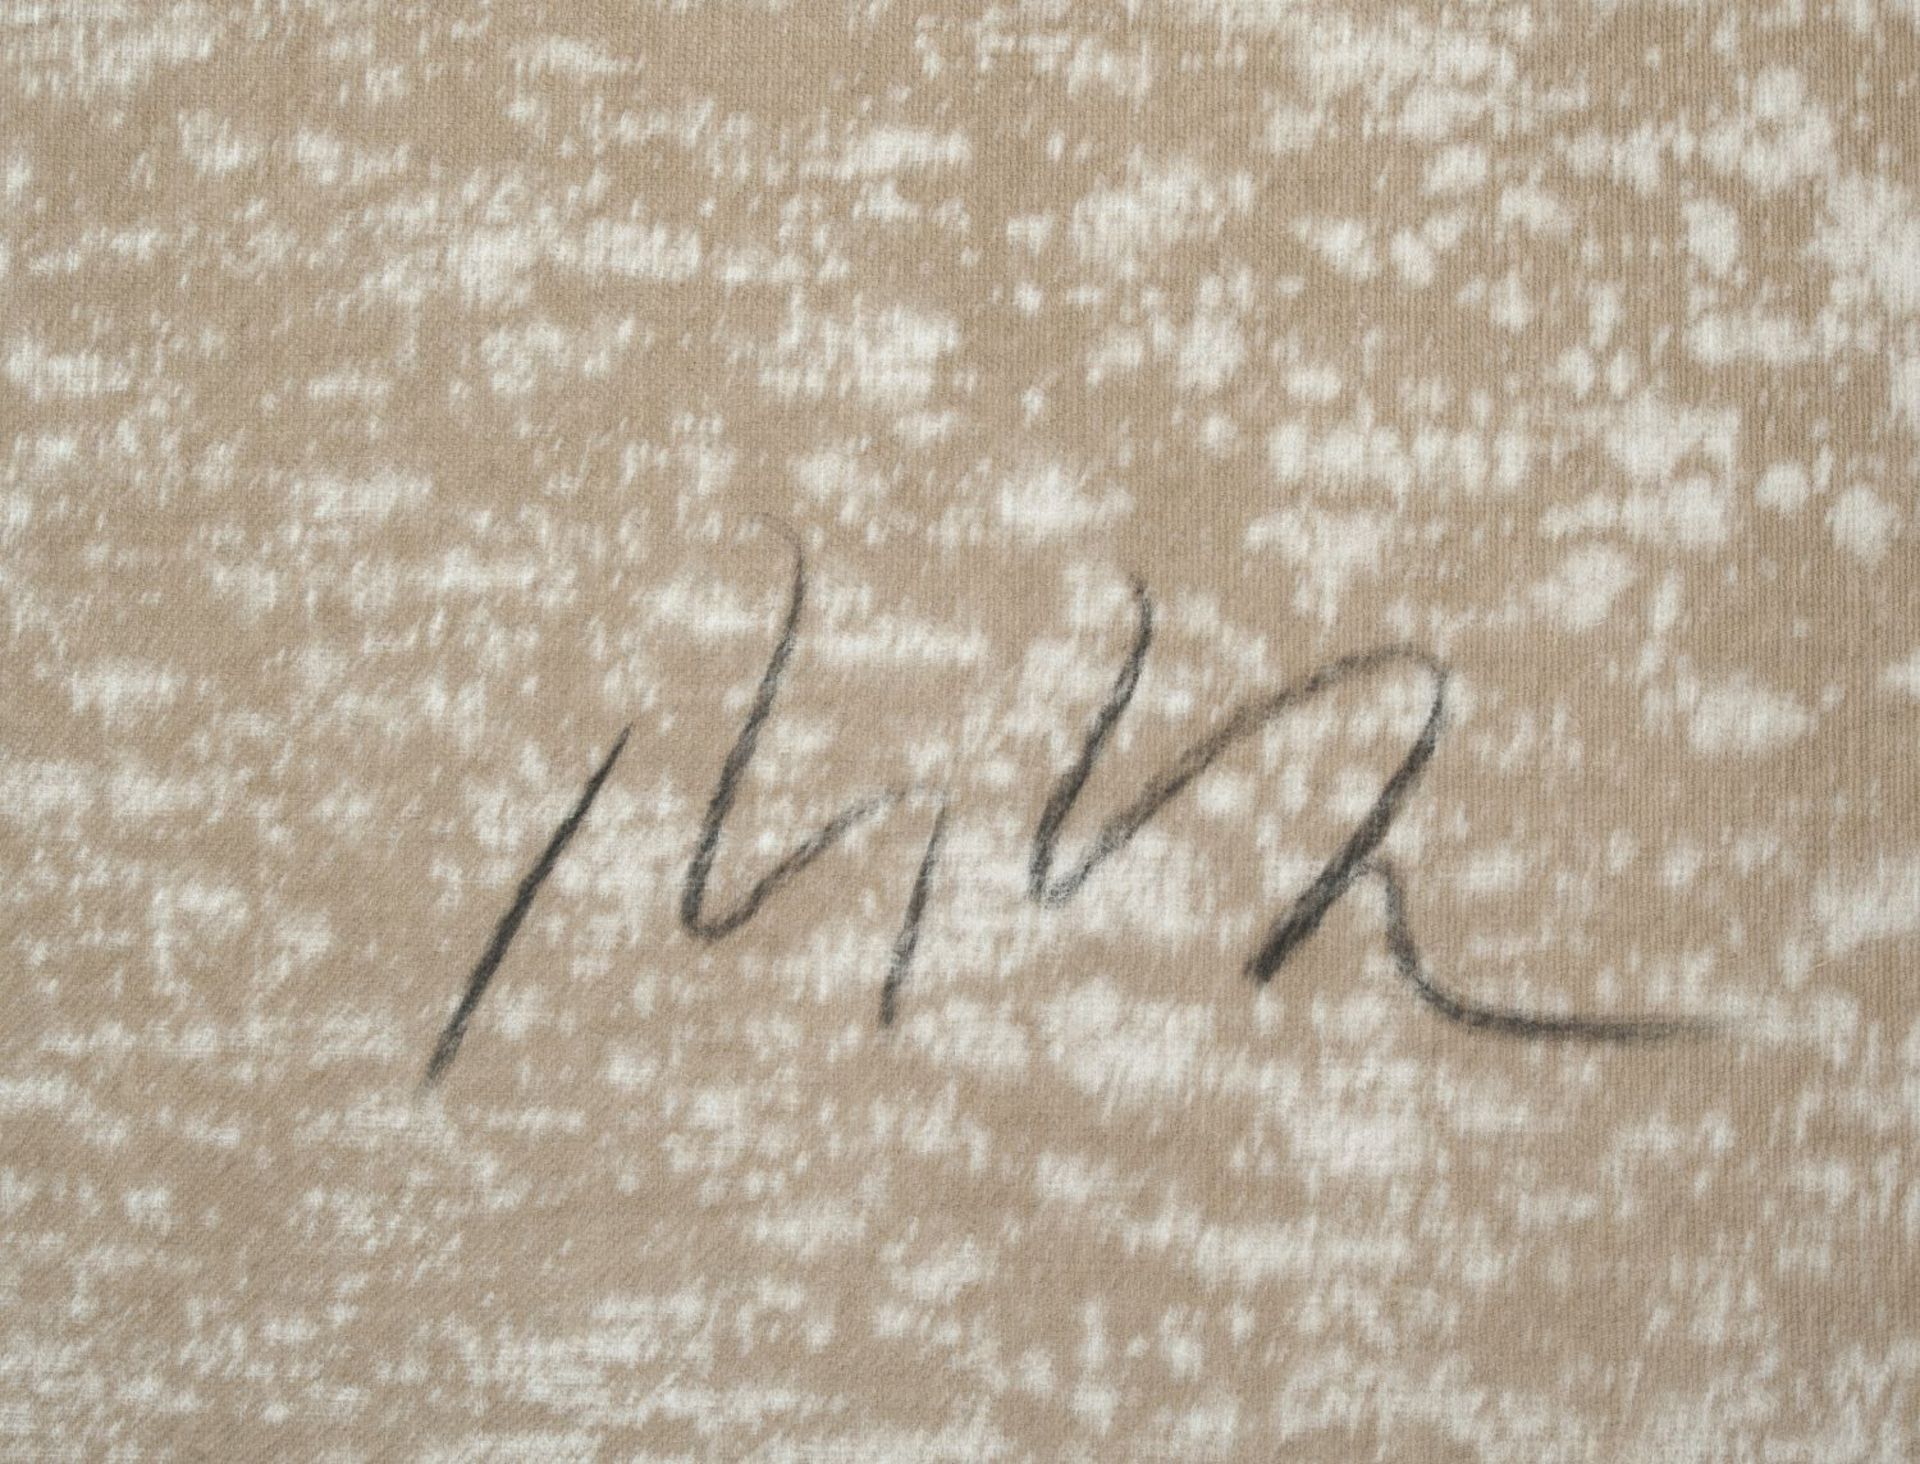 Turk, Armin. 1943 Werdohl - Velbert 2013Blaue Punkte im Nebel. Eitempera/Lwd. 200 x 220 cm. Verso - Bild 2 aus 4